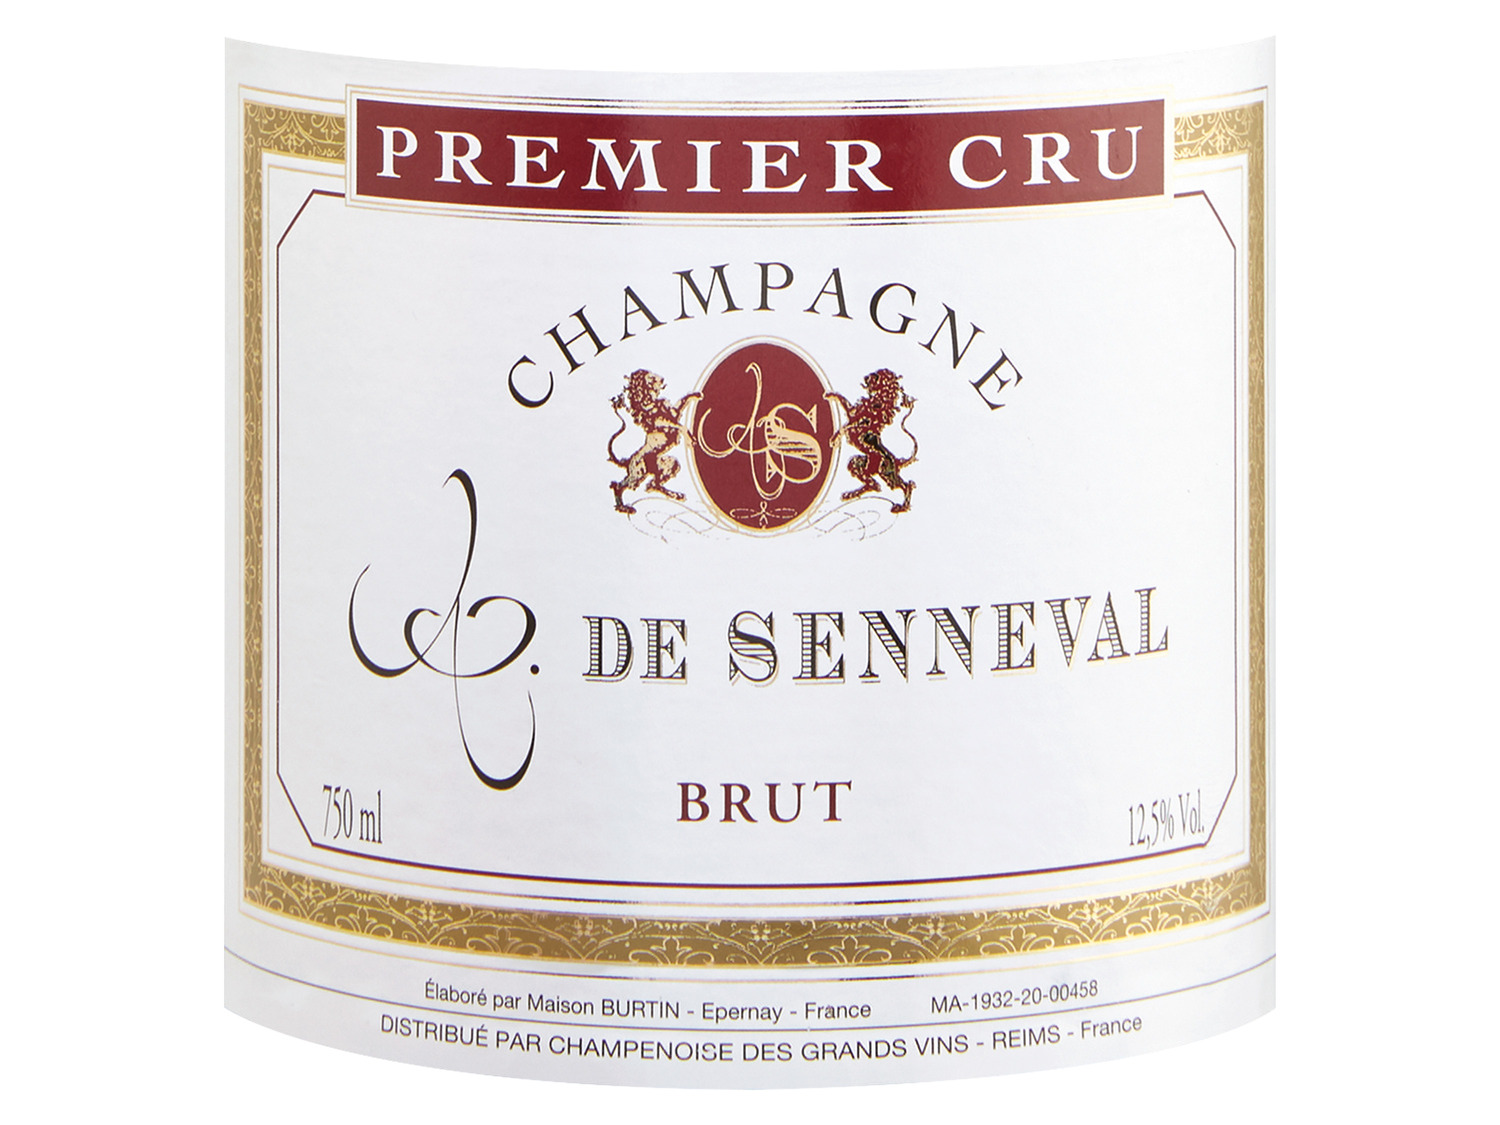 Senneval Cru brut, 2011 Premier Comte Champagner de